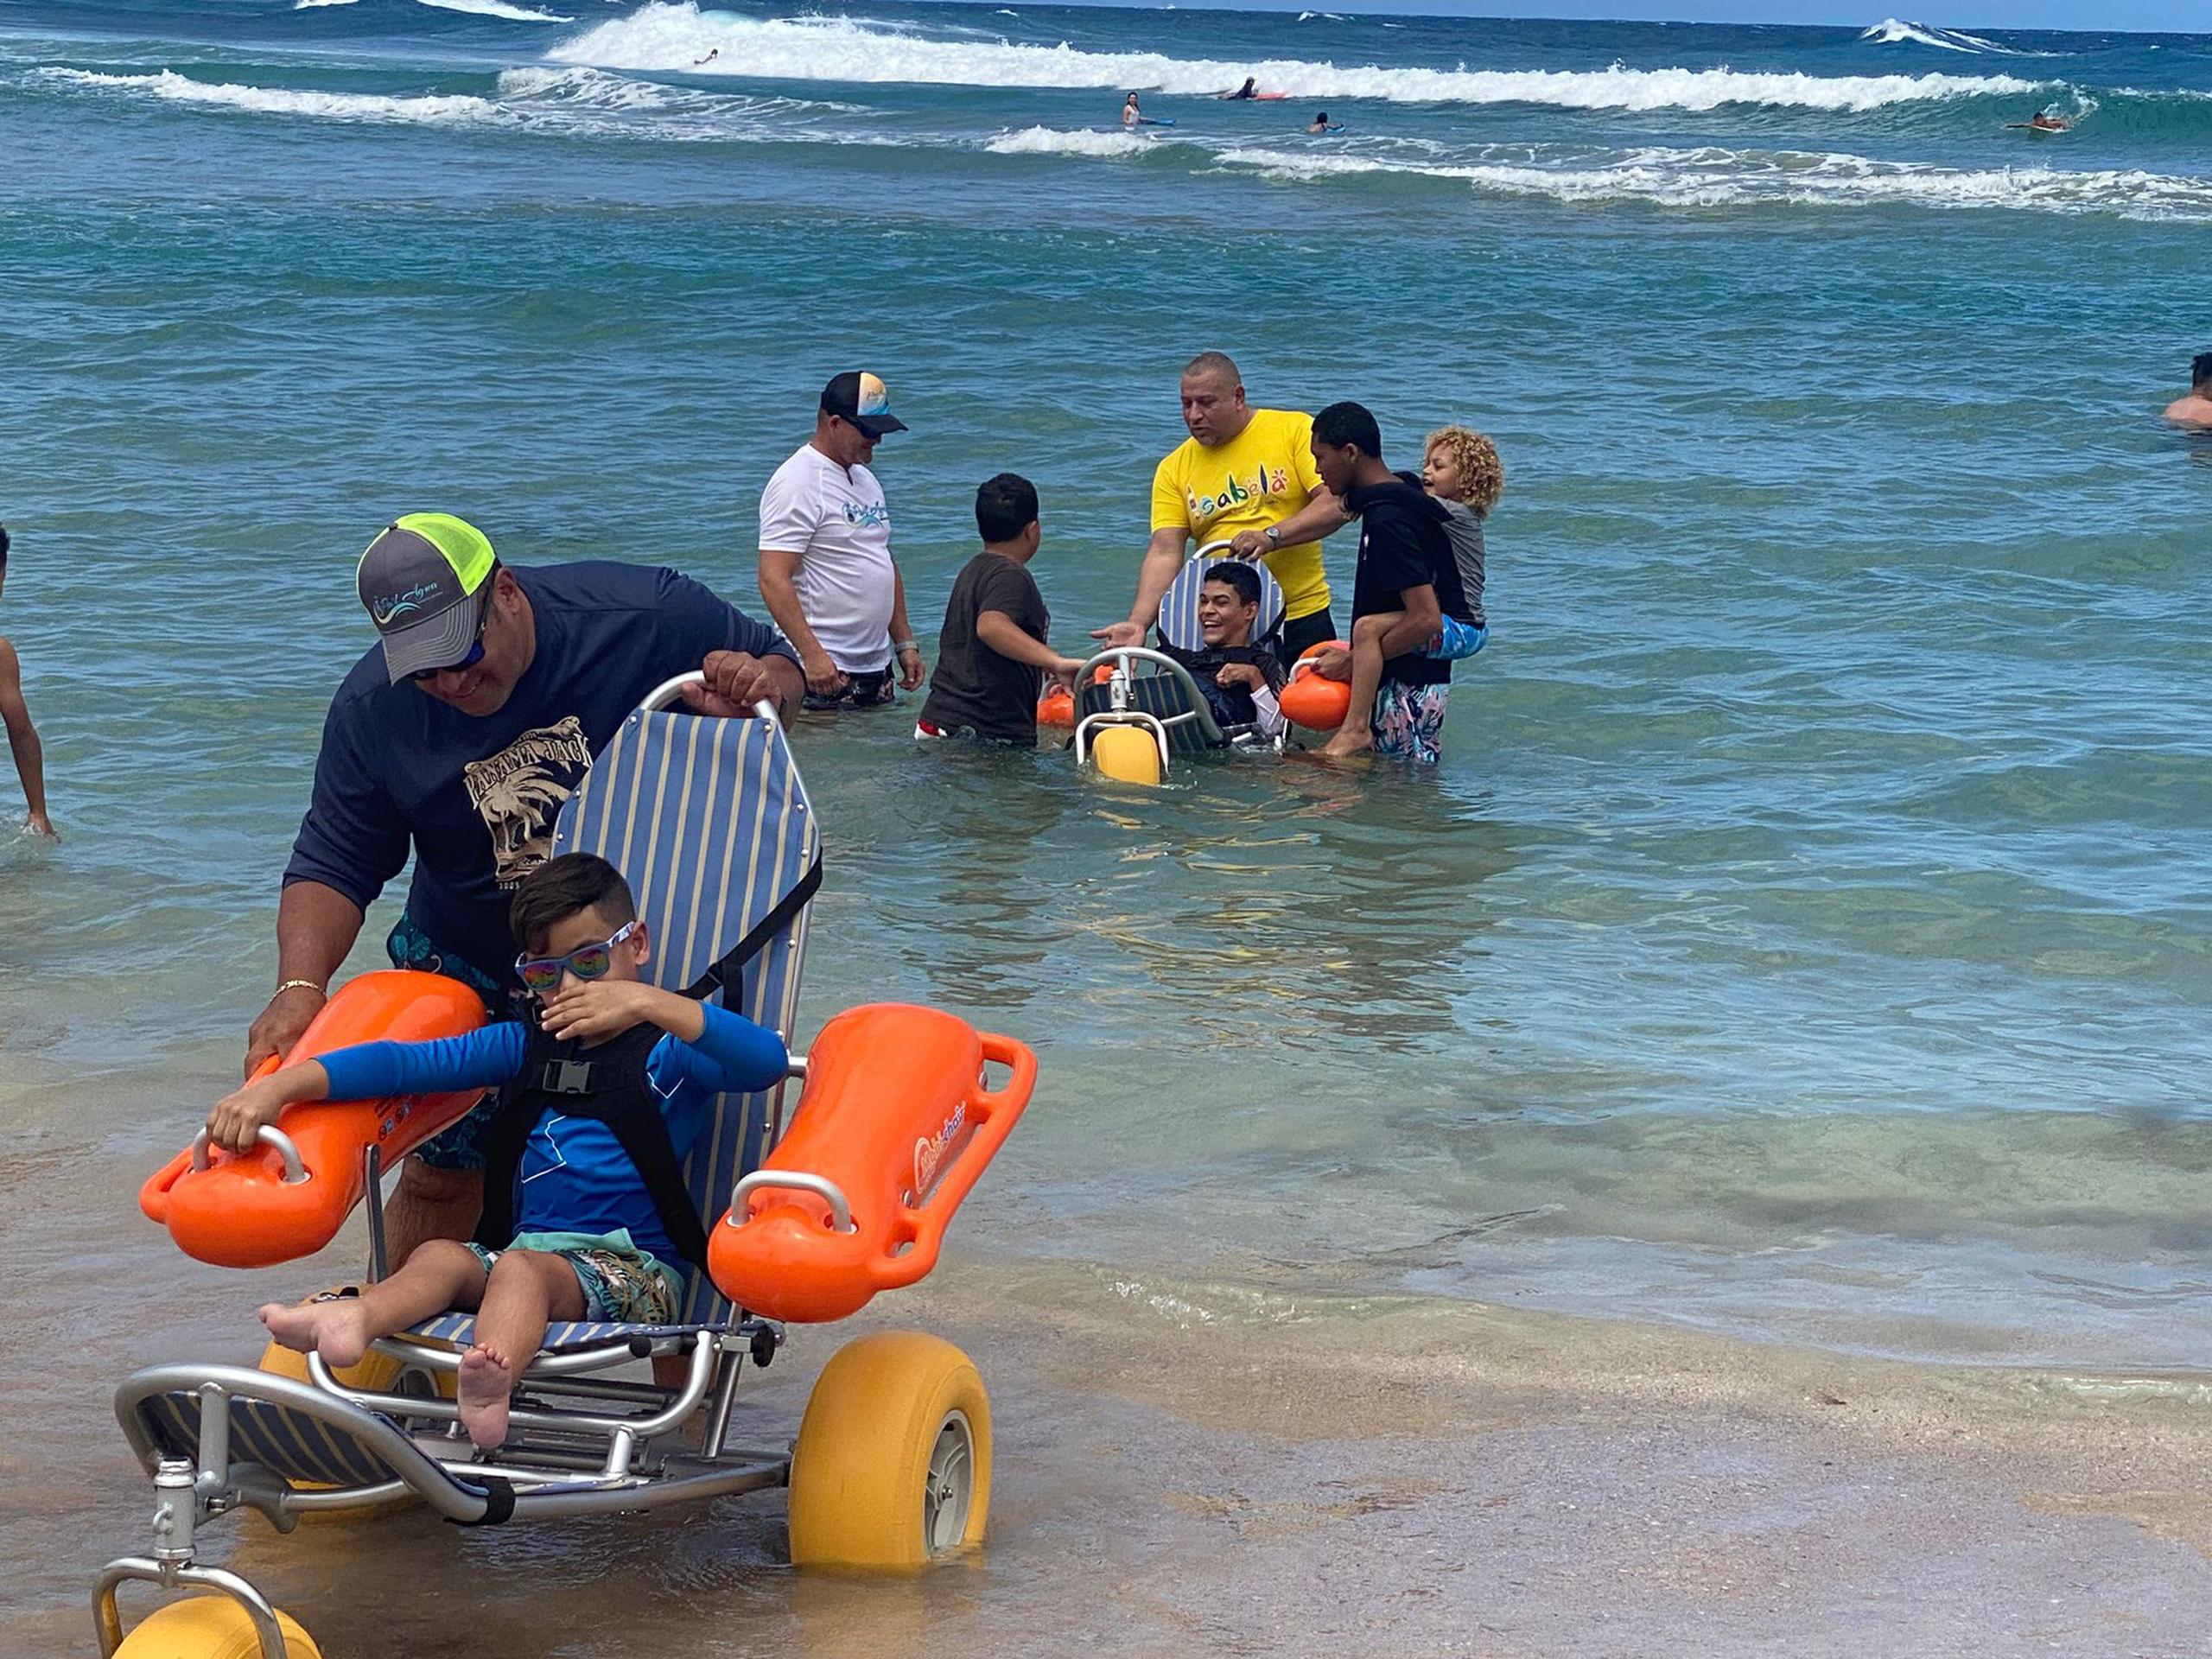 El Municipio de Isabela presentó la iniciativa del Proyecto Pa’l Agua, que busca crear más accesos al mar y las playas para personas con impedimentos, de manera que también puedan disfrutar esas maravillas.